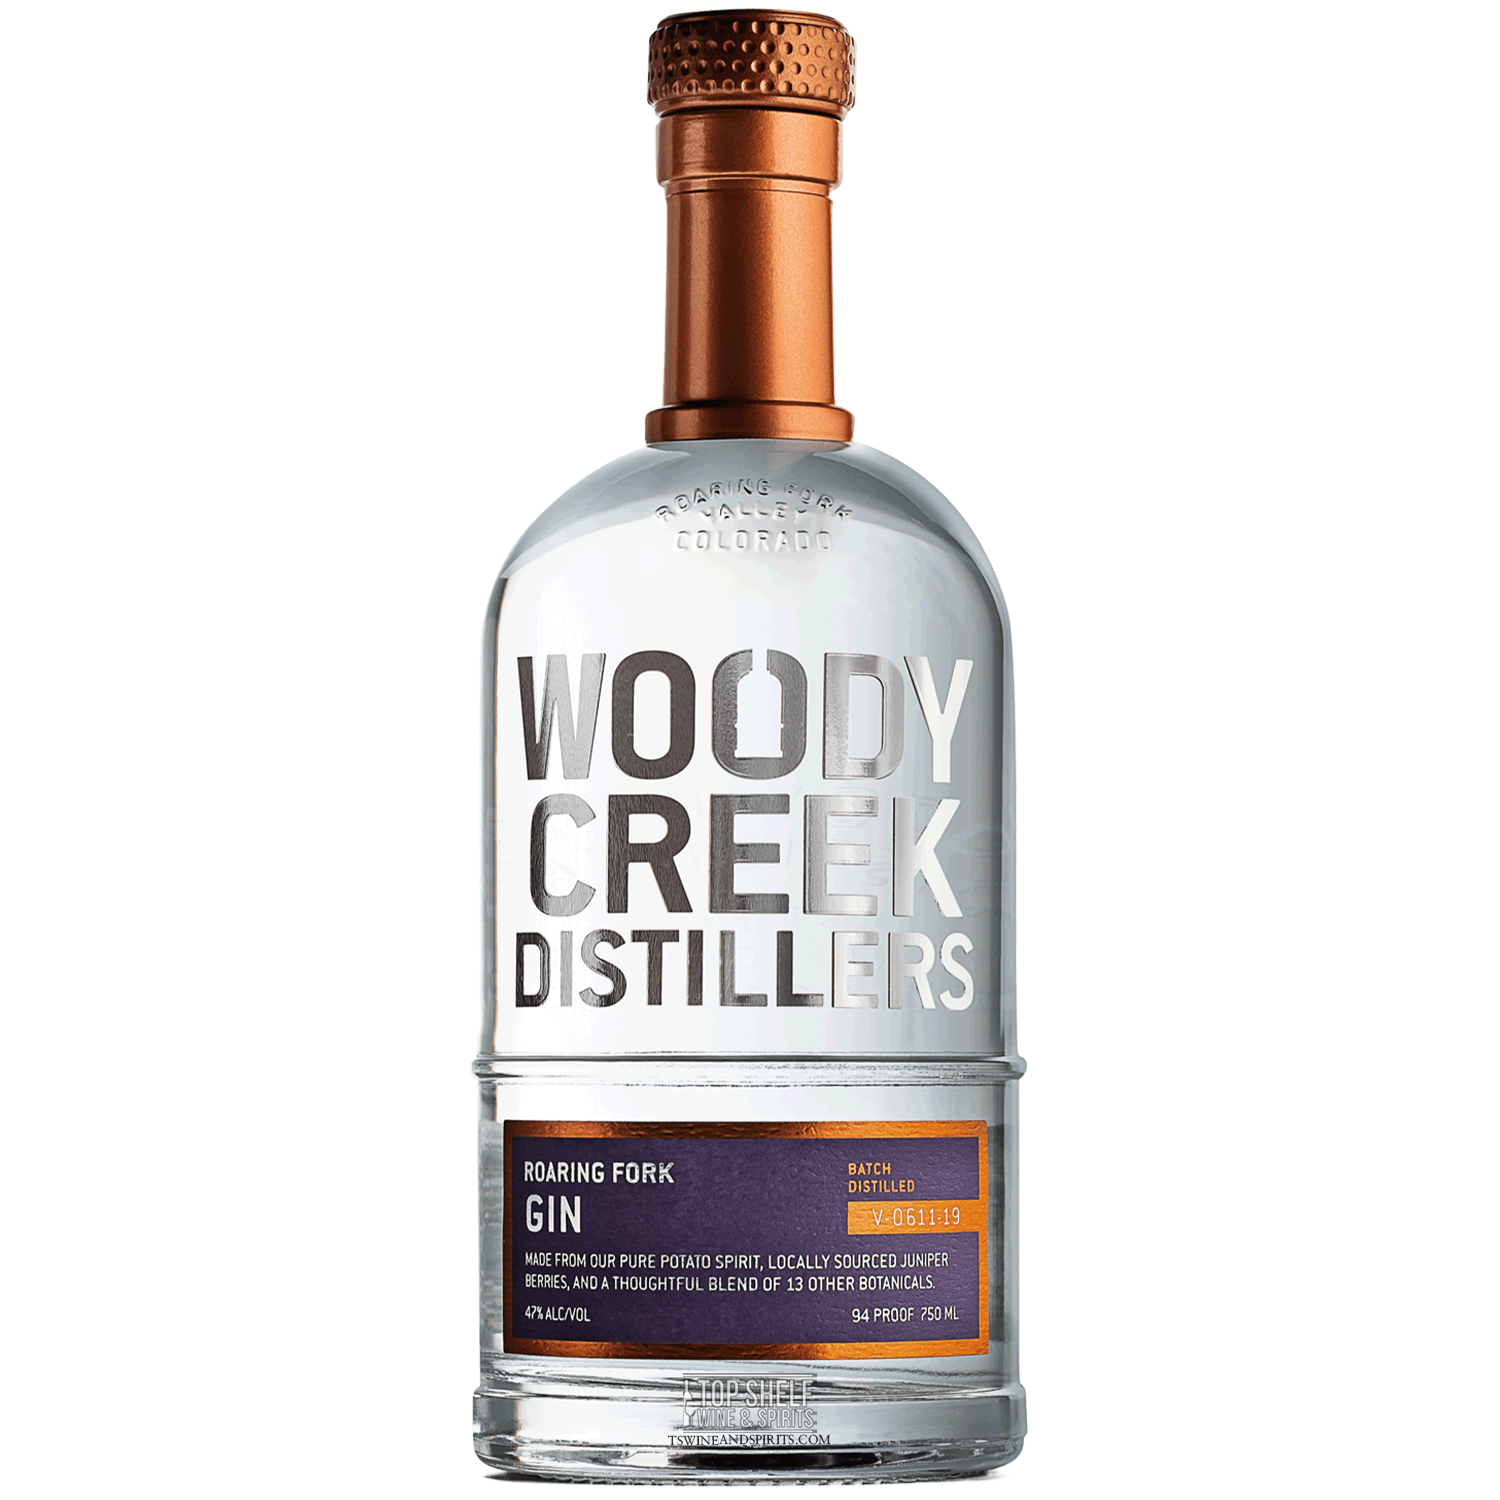 Woody Creek Distillers Roaring Fork Gin